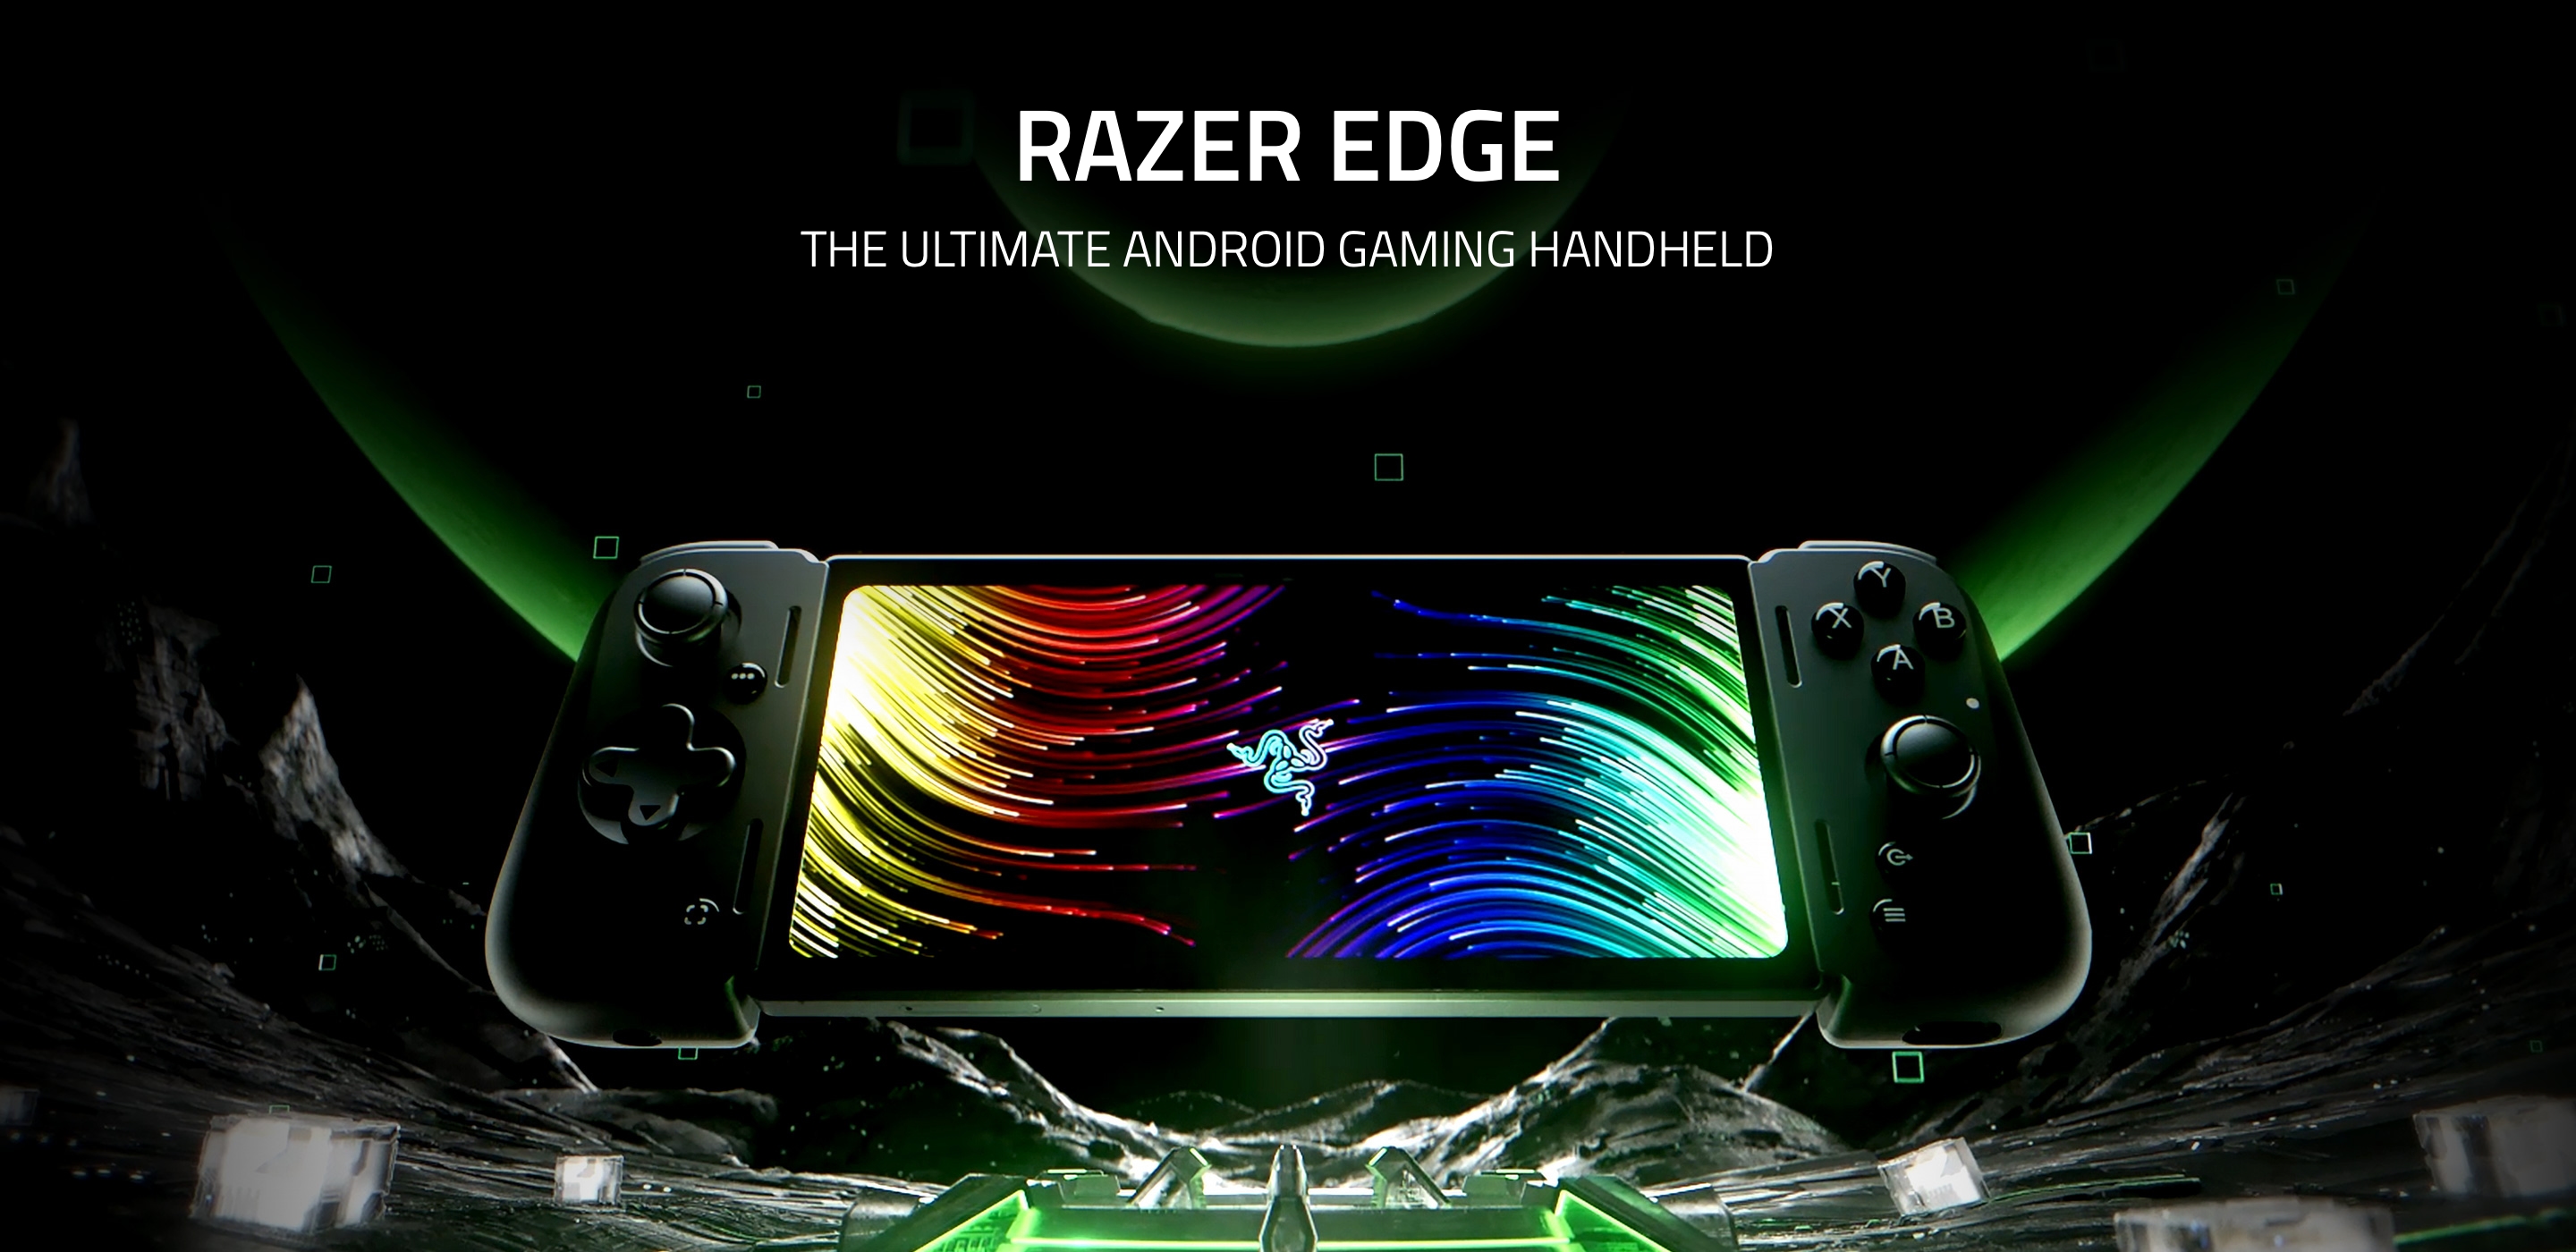 Razer Edge почали продавати у США: Android-консоль для хмарного геймінгу з AMOLED-екраном на 144 Гц і чипом Snapdragon G3X Gen 1